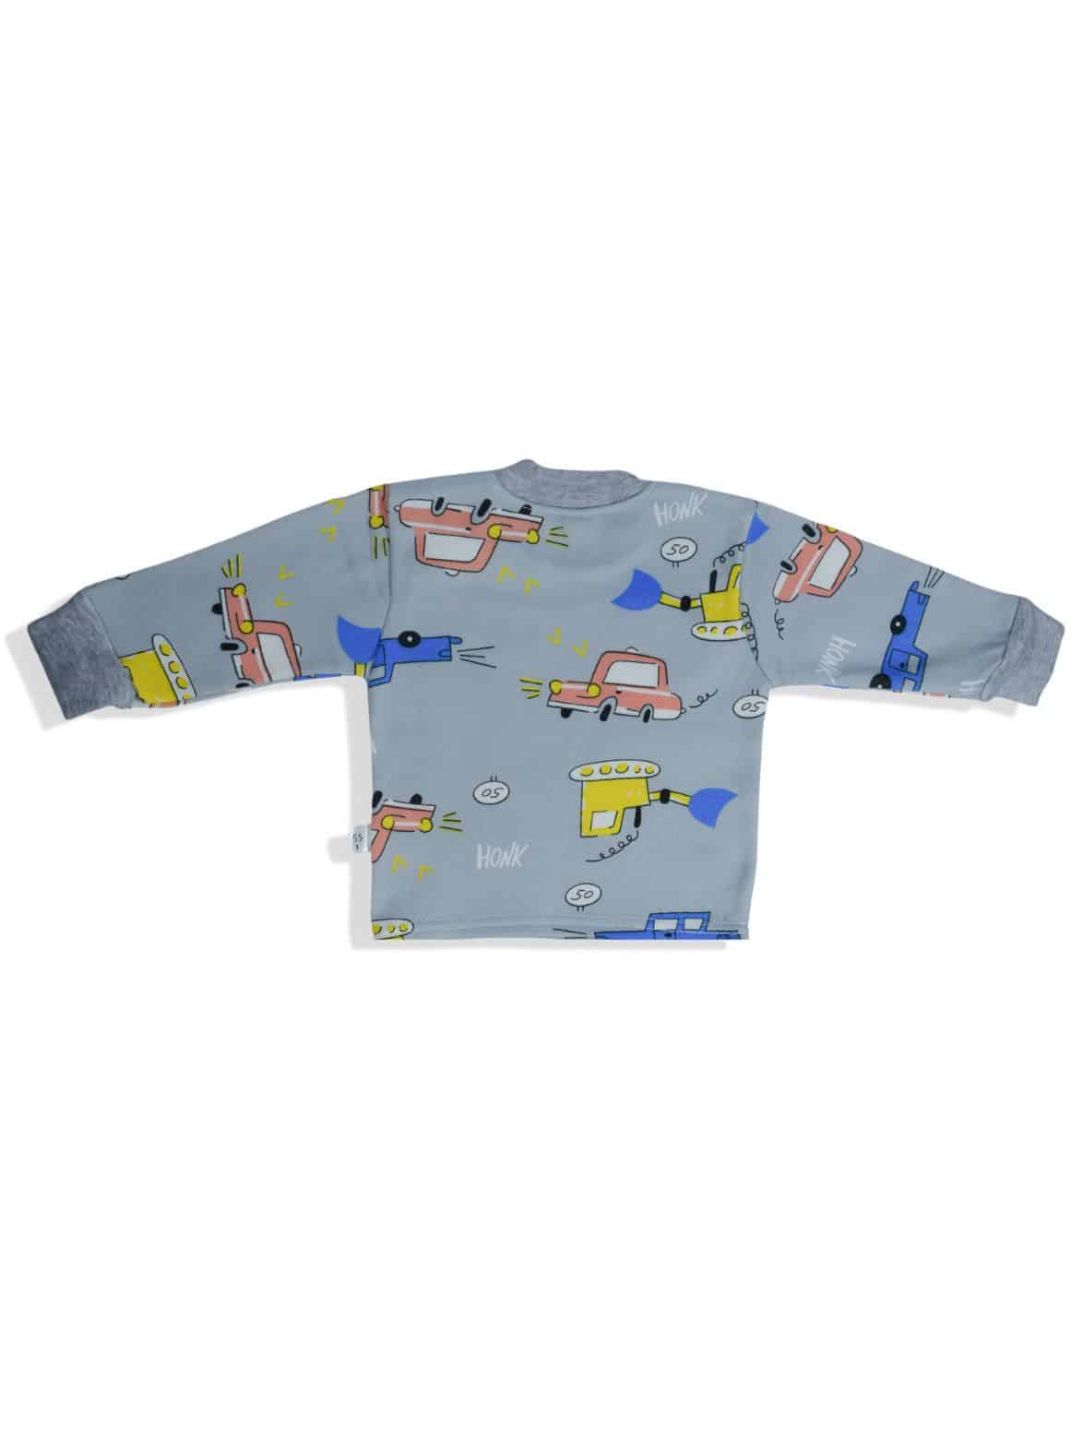 Winter Warm Fleece Kid’s Cartoon Thick Sweatshirt Tshirt and Pyjama